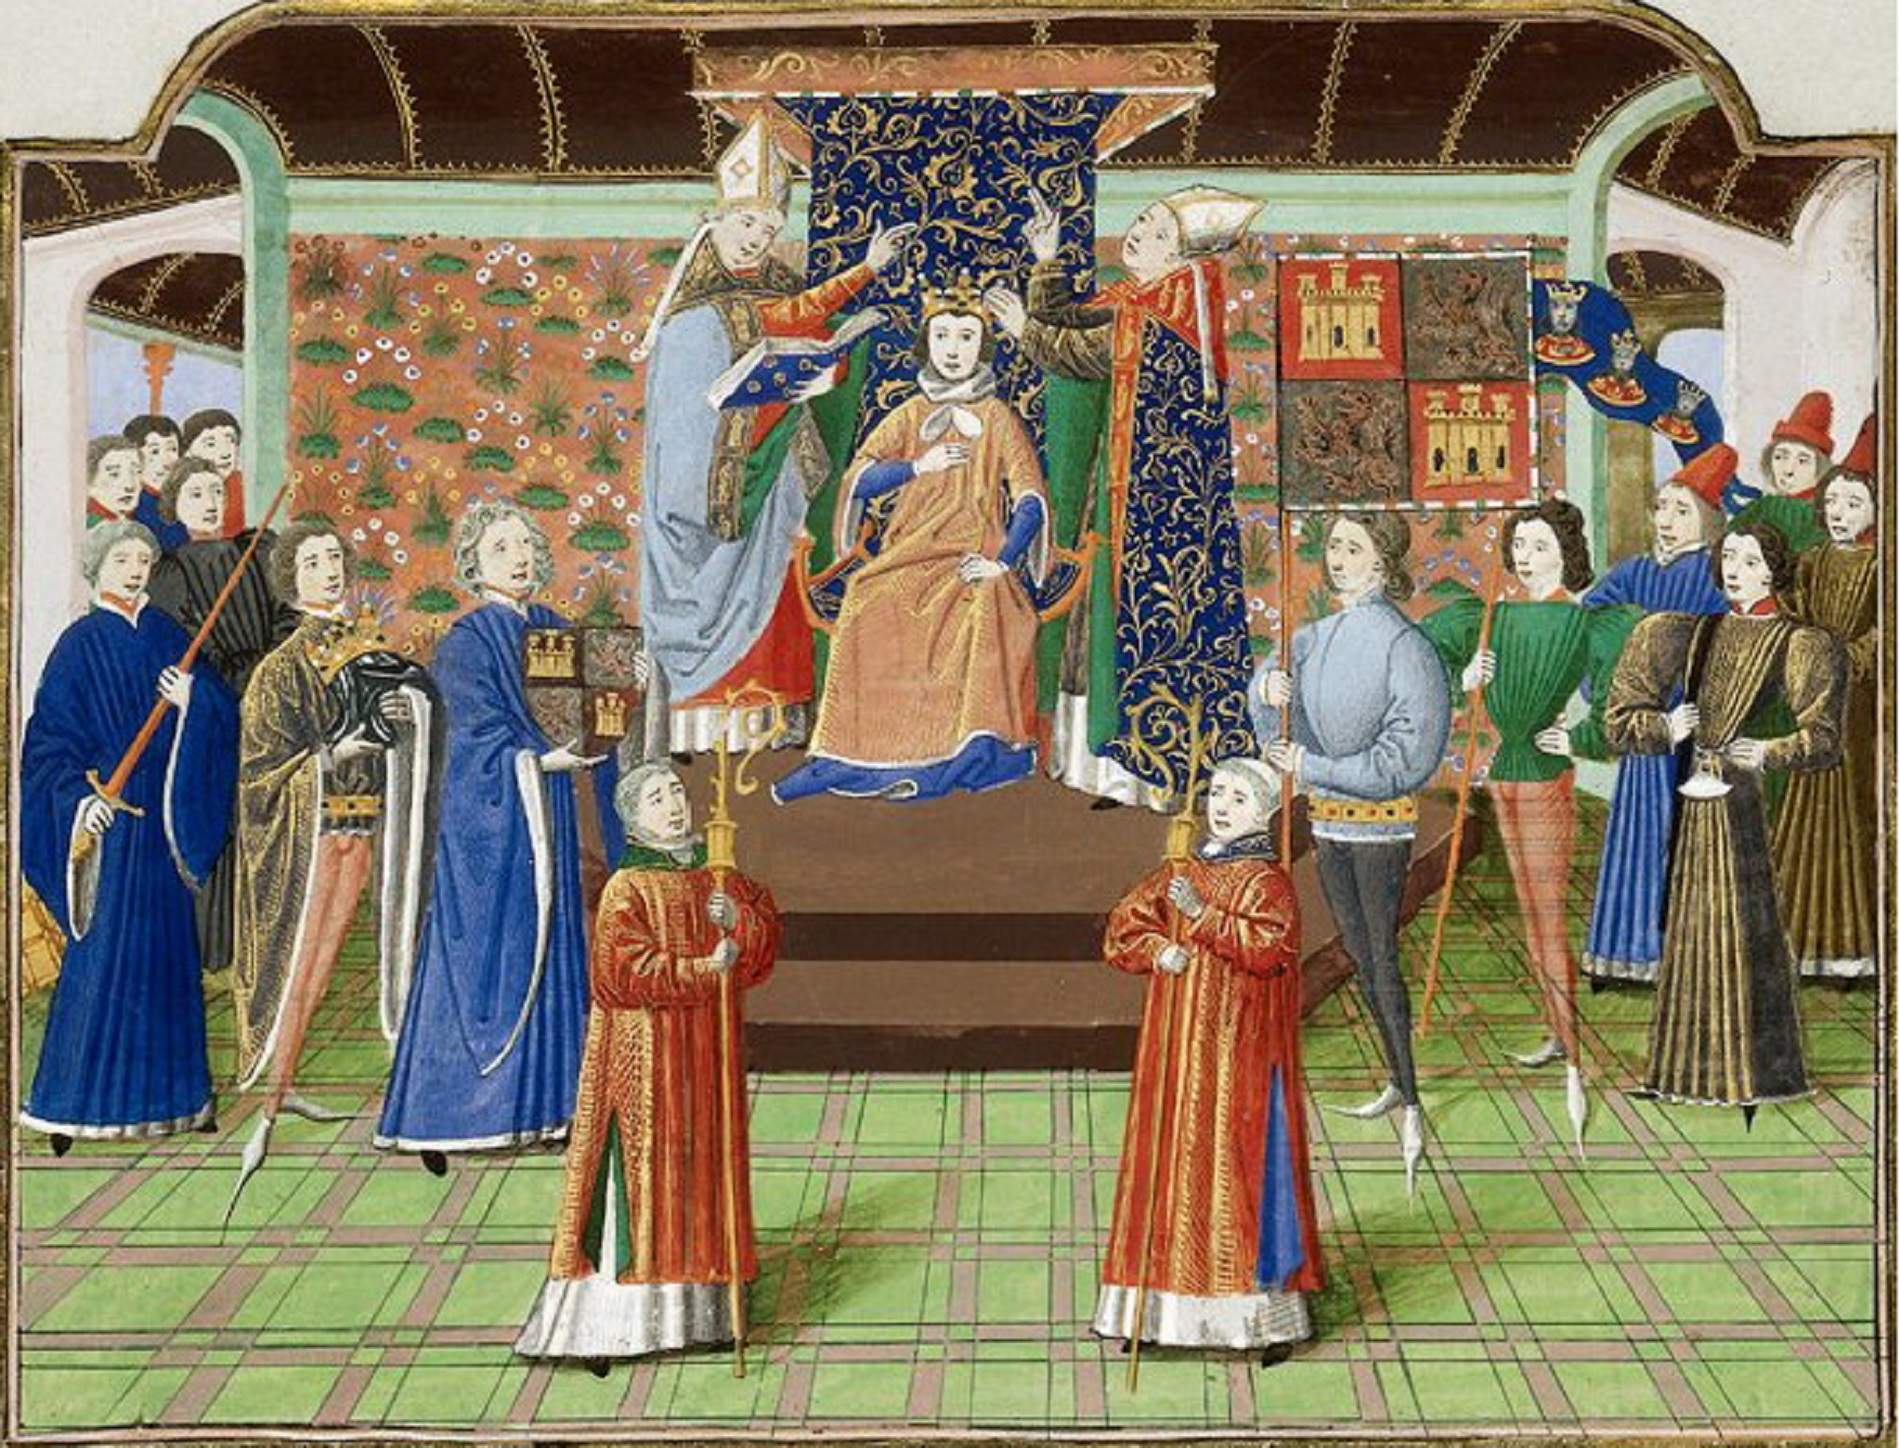 Coronació d'Enric II de Castella, el rei que va alienar Trebiñu del patrimoni reial. Font British Libary